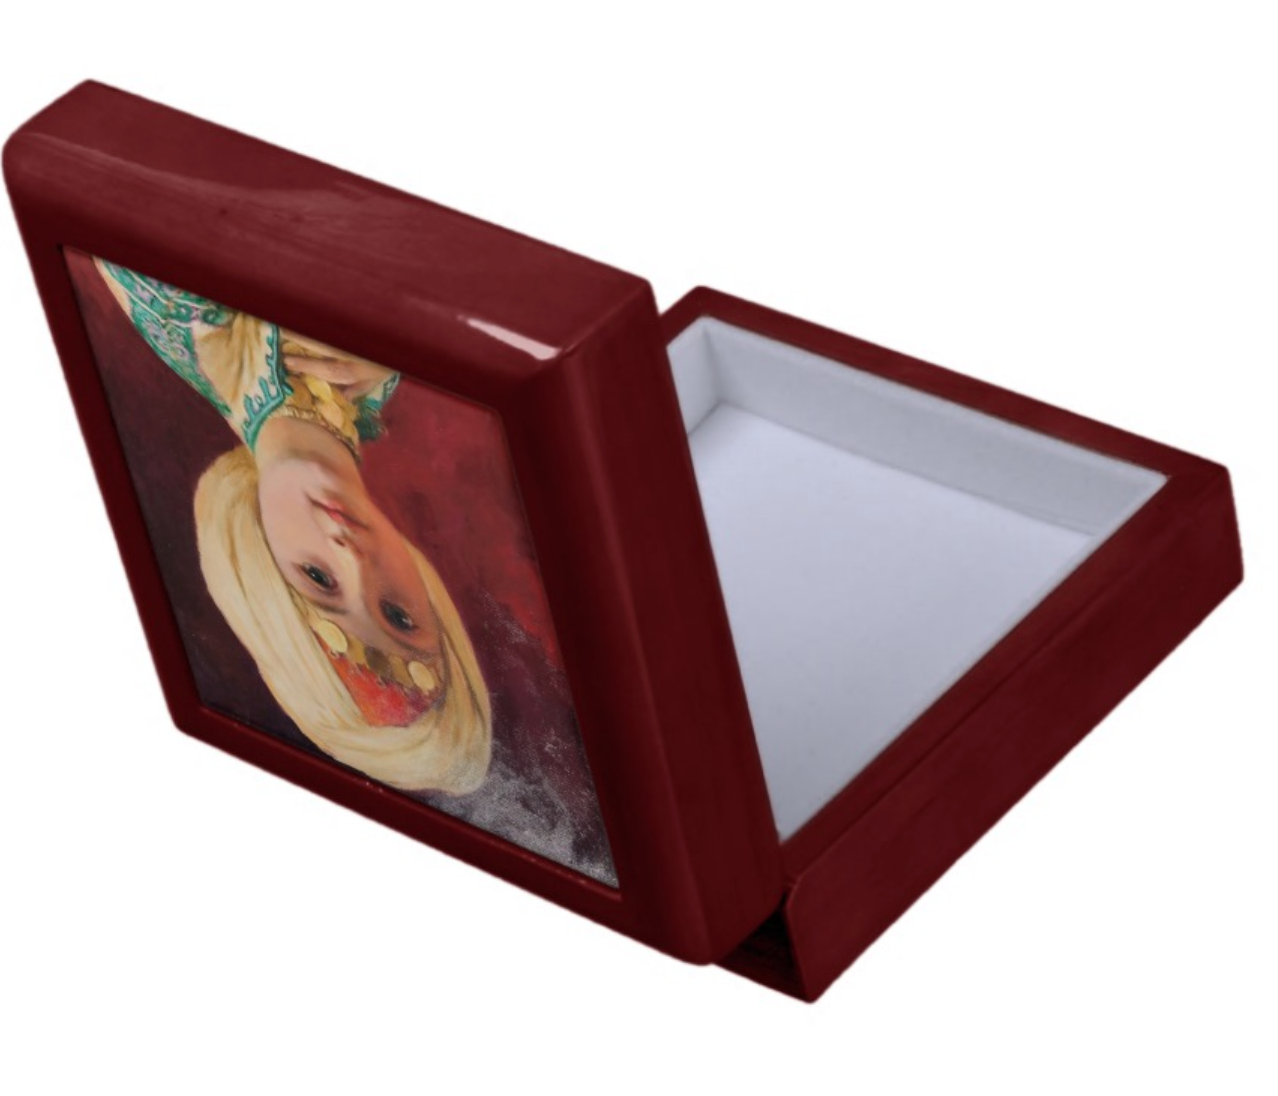 Keepsake/Jewelry Box - Carl Haag Child with Turban - Lacquer Box Mahogany Wood Felt Lined